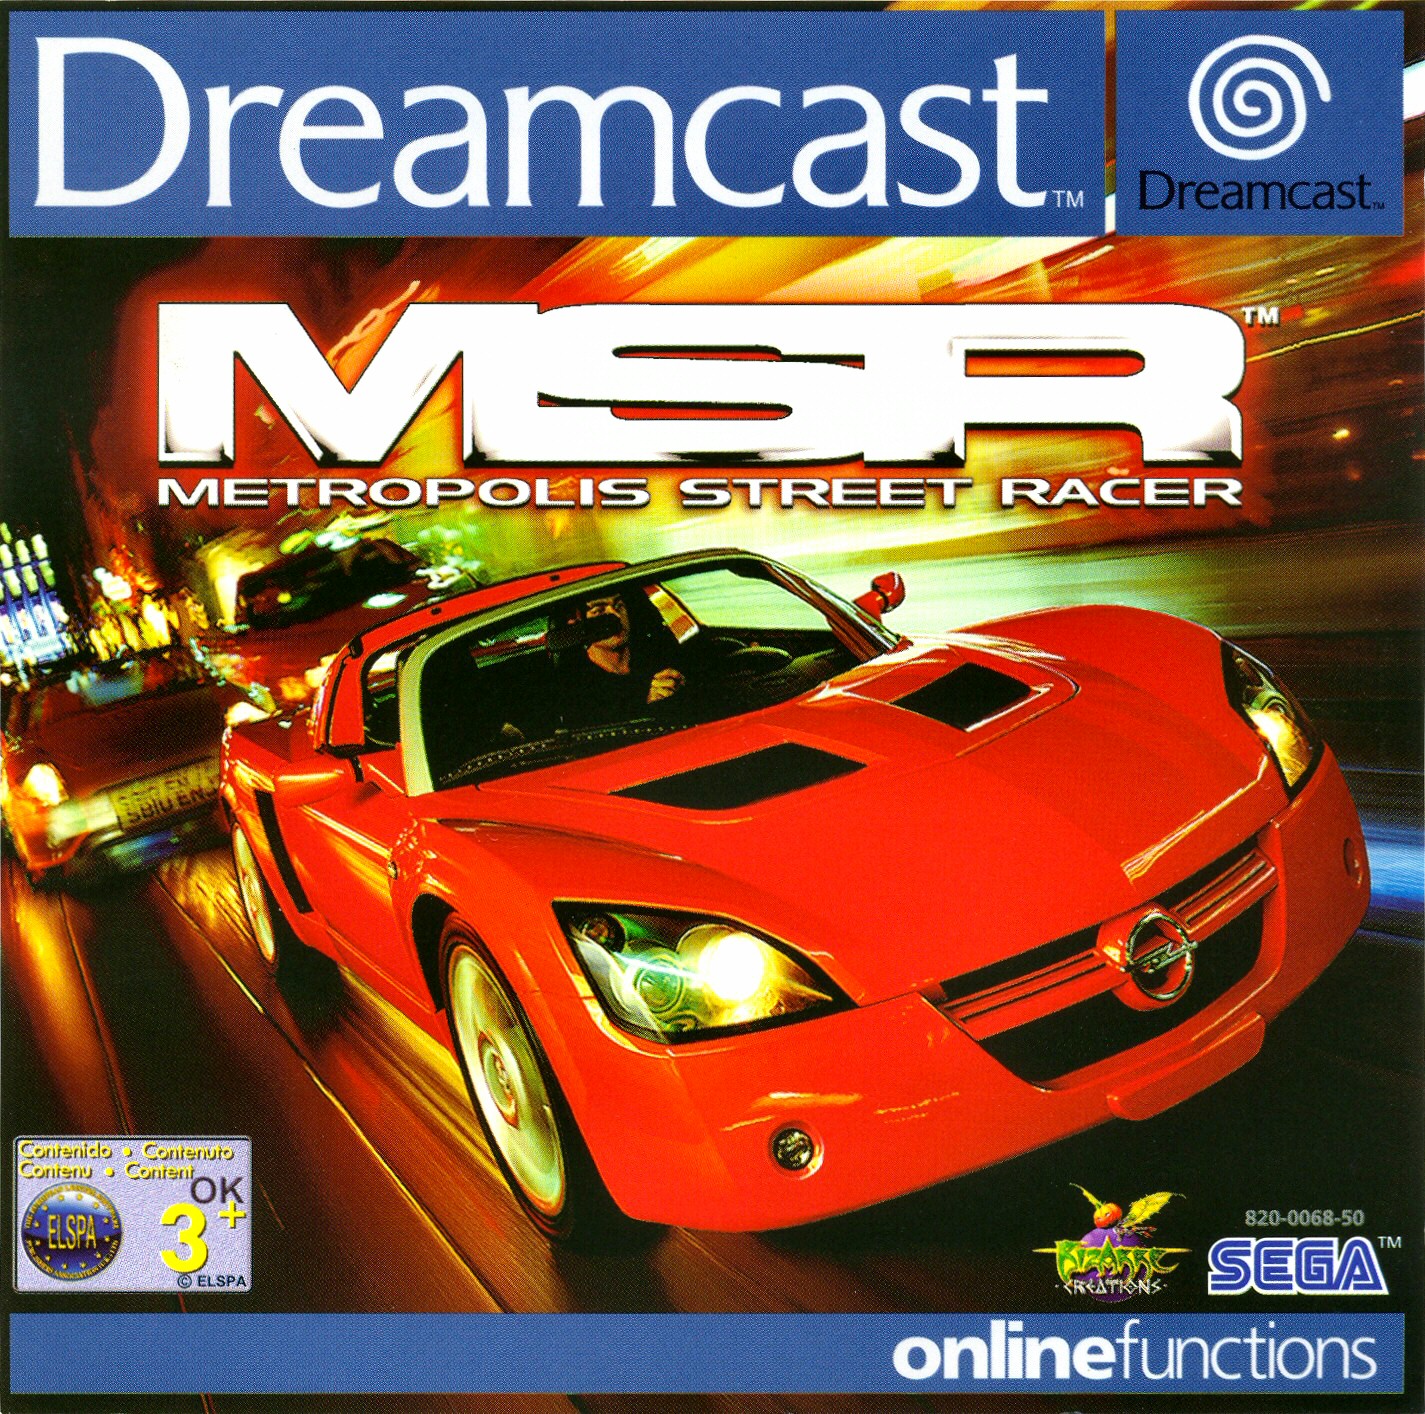 MSR - Metropolis Street Racer